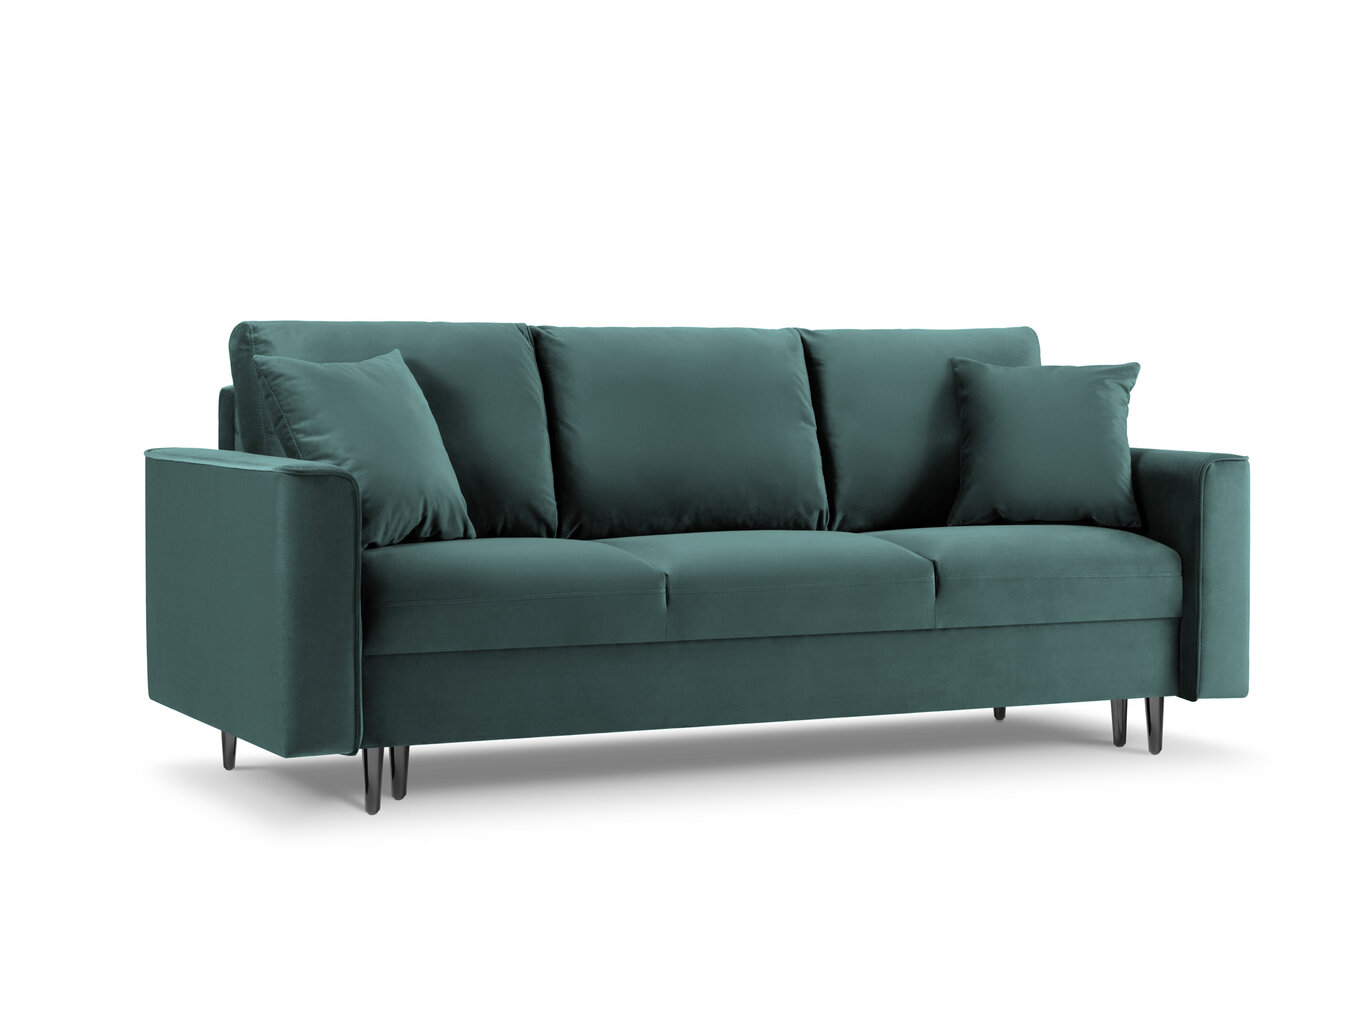 Trivietė sofa Mazzini Sofas Cartadera, žalia/juoda kaina ir informacija | Sofos | pigu.lt